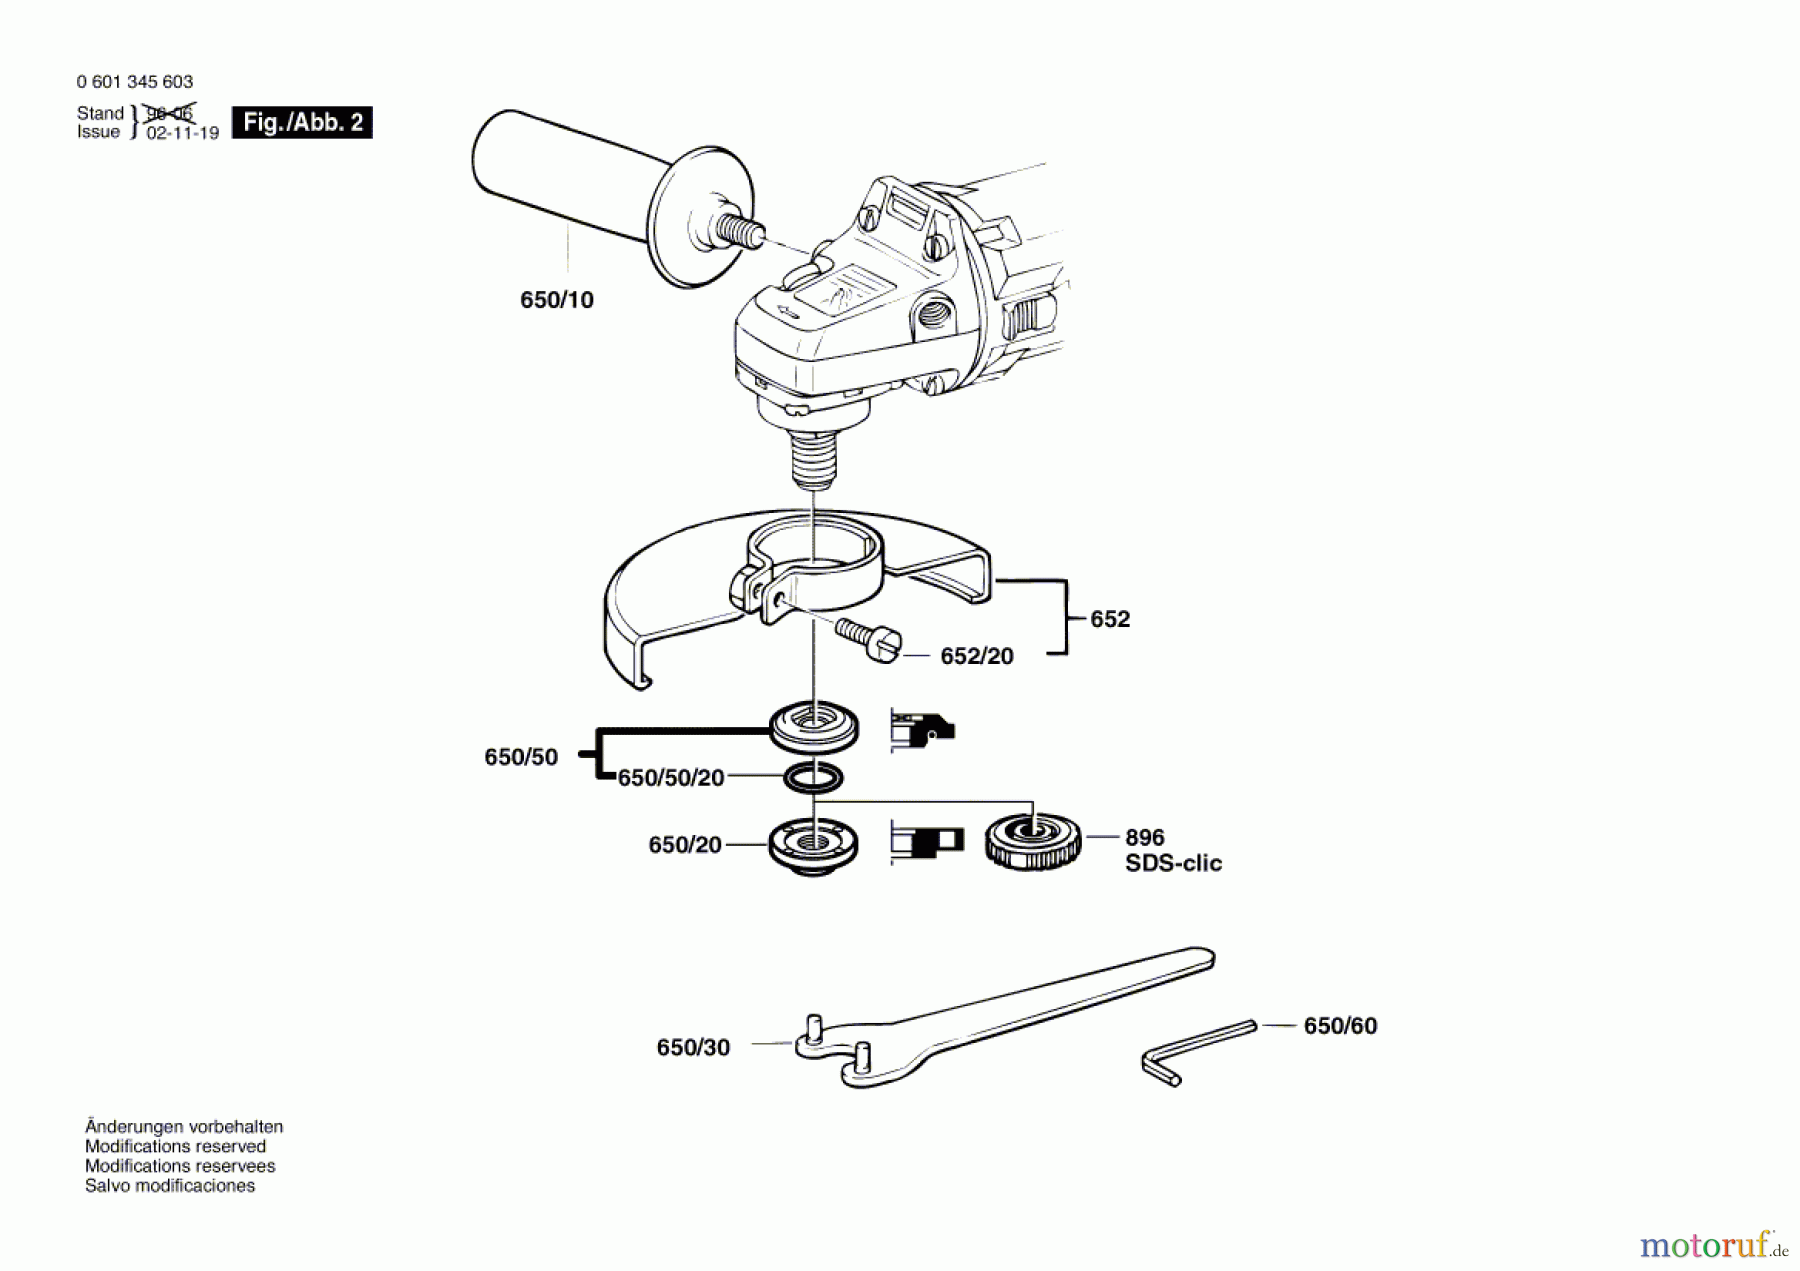  Bosch Werkzeug Winkelschleifer GWS 9-150 C Seite 2